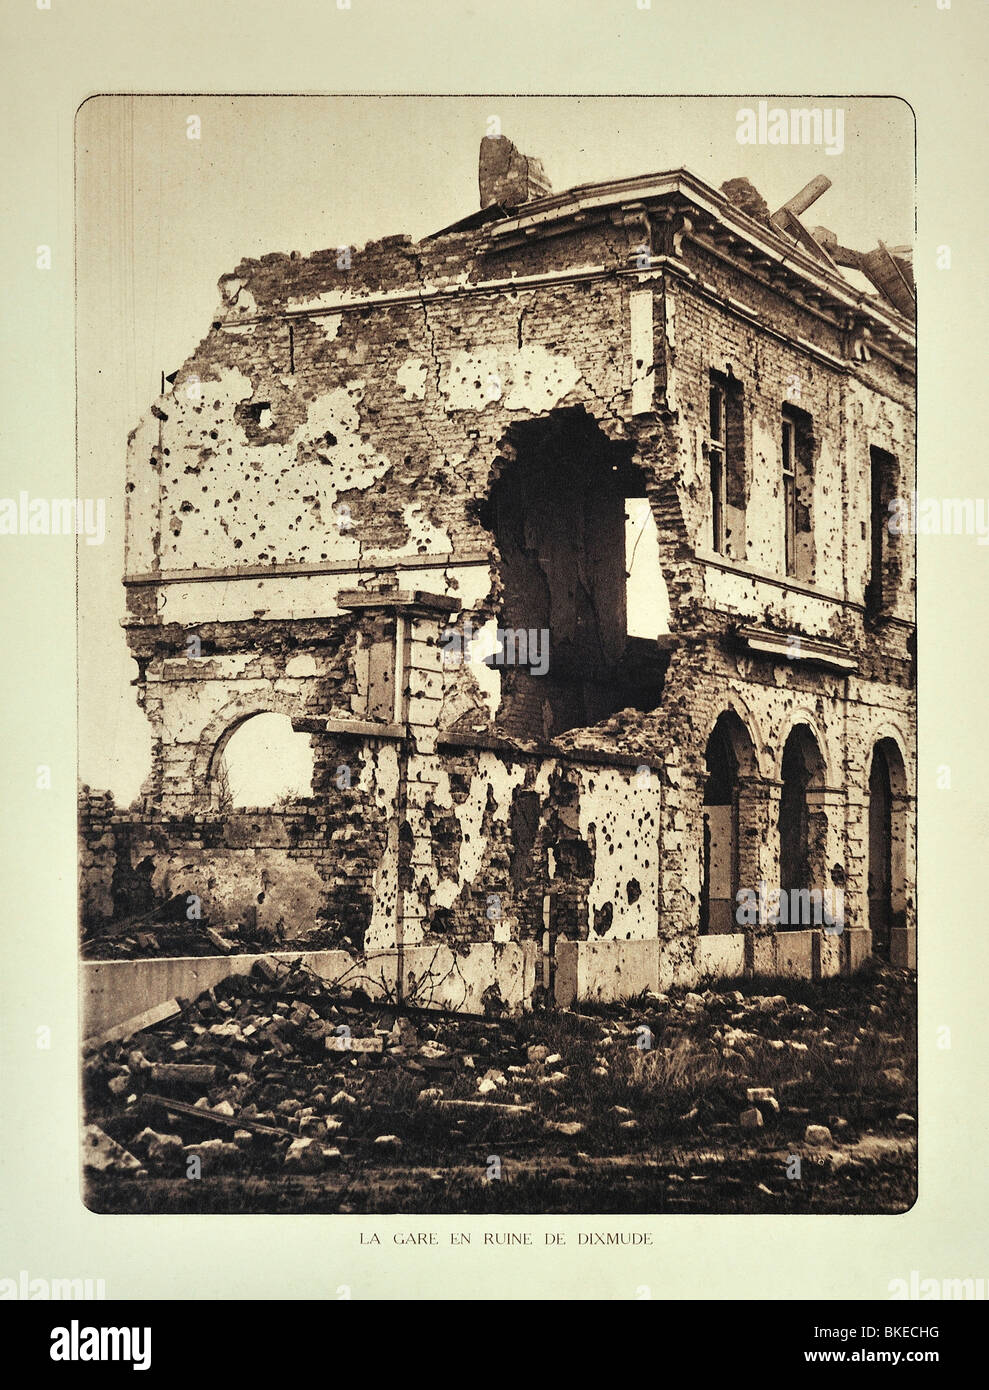 La gare de Diksmuide / Dixmude en ruines après la PREMIÈRE GUERRE MONDIALE bombardement en Flandre occidentale pendant la Première Guerre mondiale, la Belgique Banque D'Images